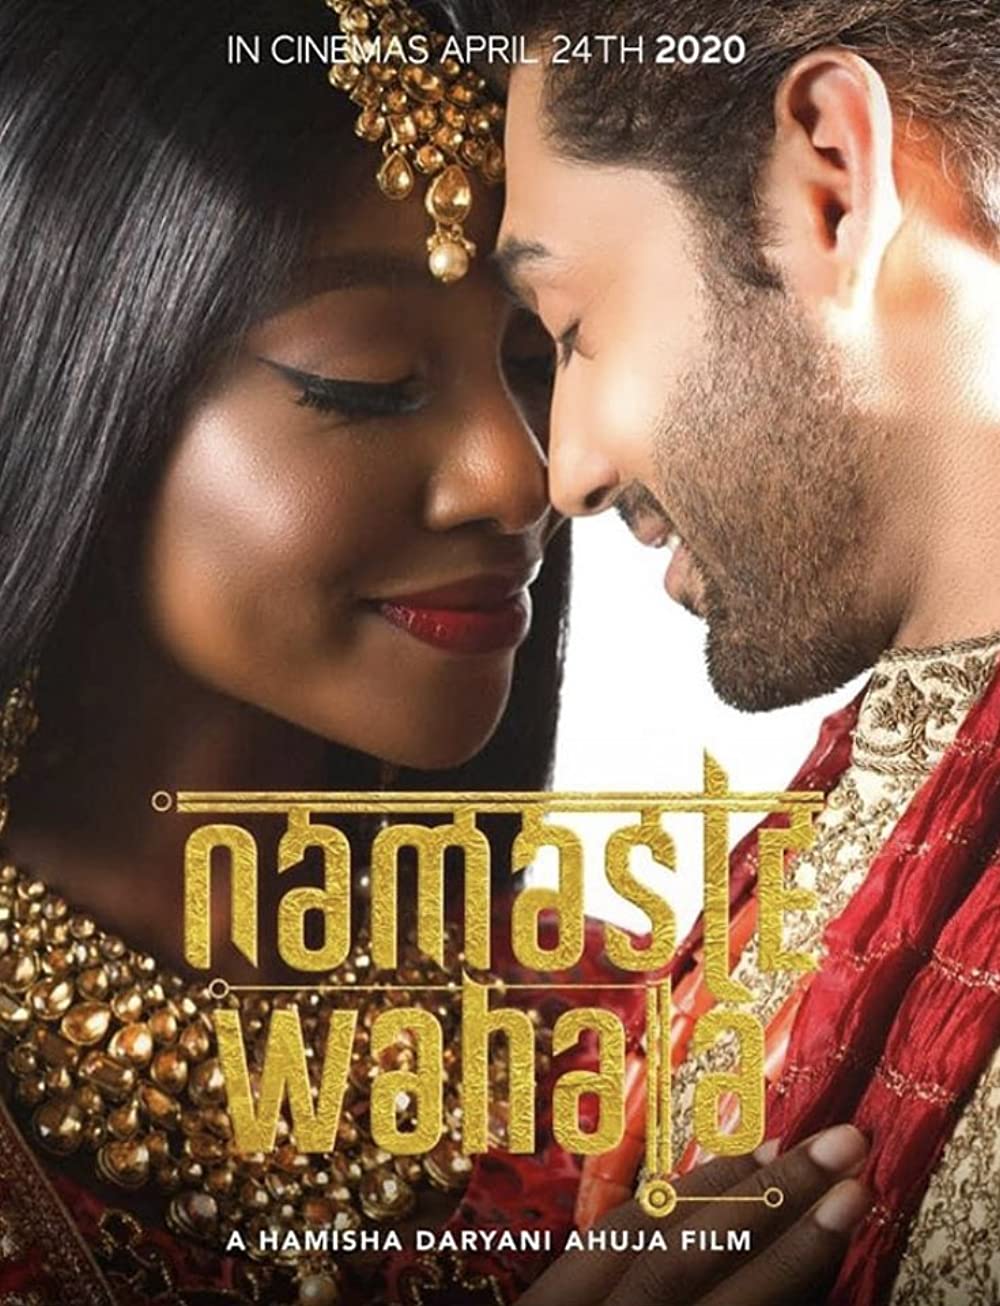 ดูหนังออนไลน์ Namaste Wahala (2020) นมัสเต วาฮาลา: สวัสดีรักอลวน